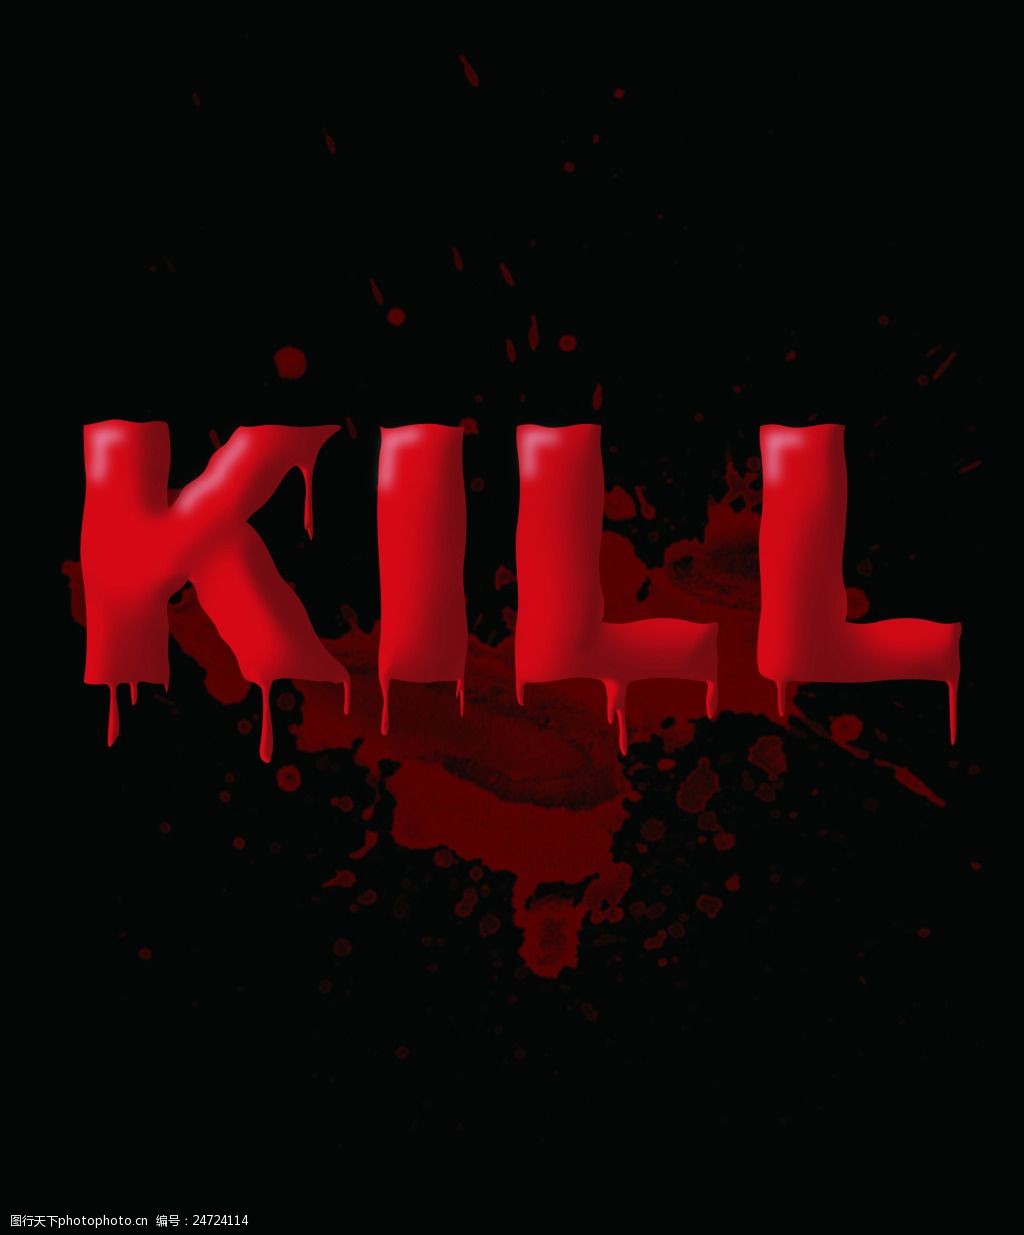 关键词:kill血腥艺术字 kill 艺术字 红色字 鲜血 血腥字体 暗黑